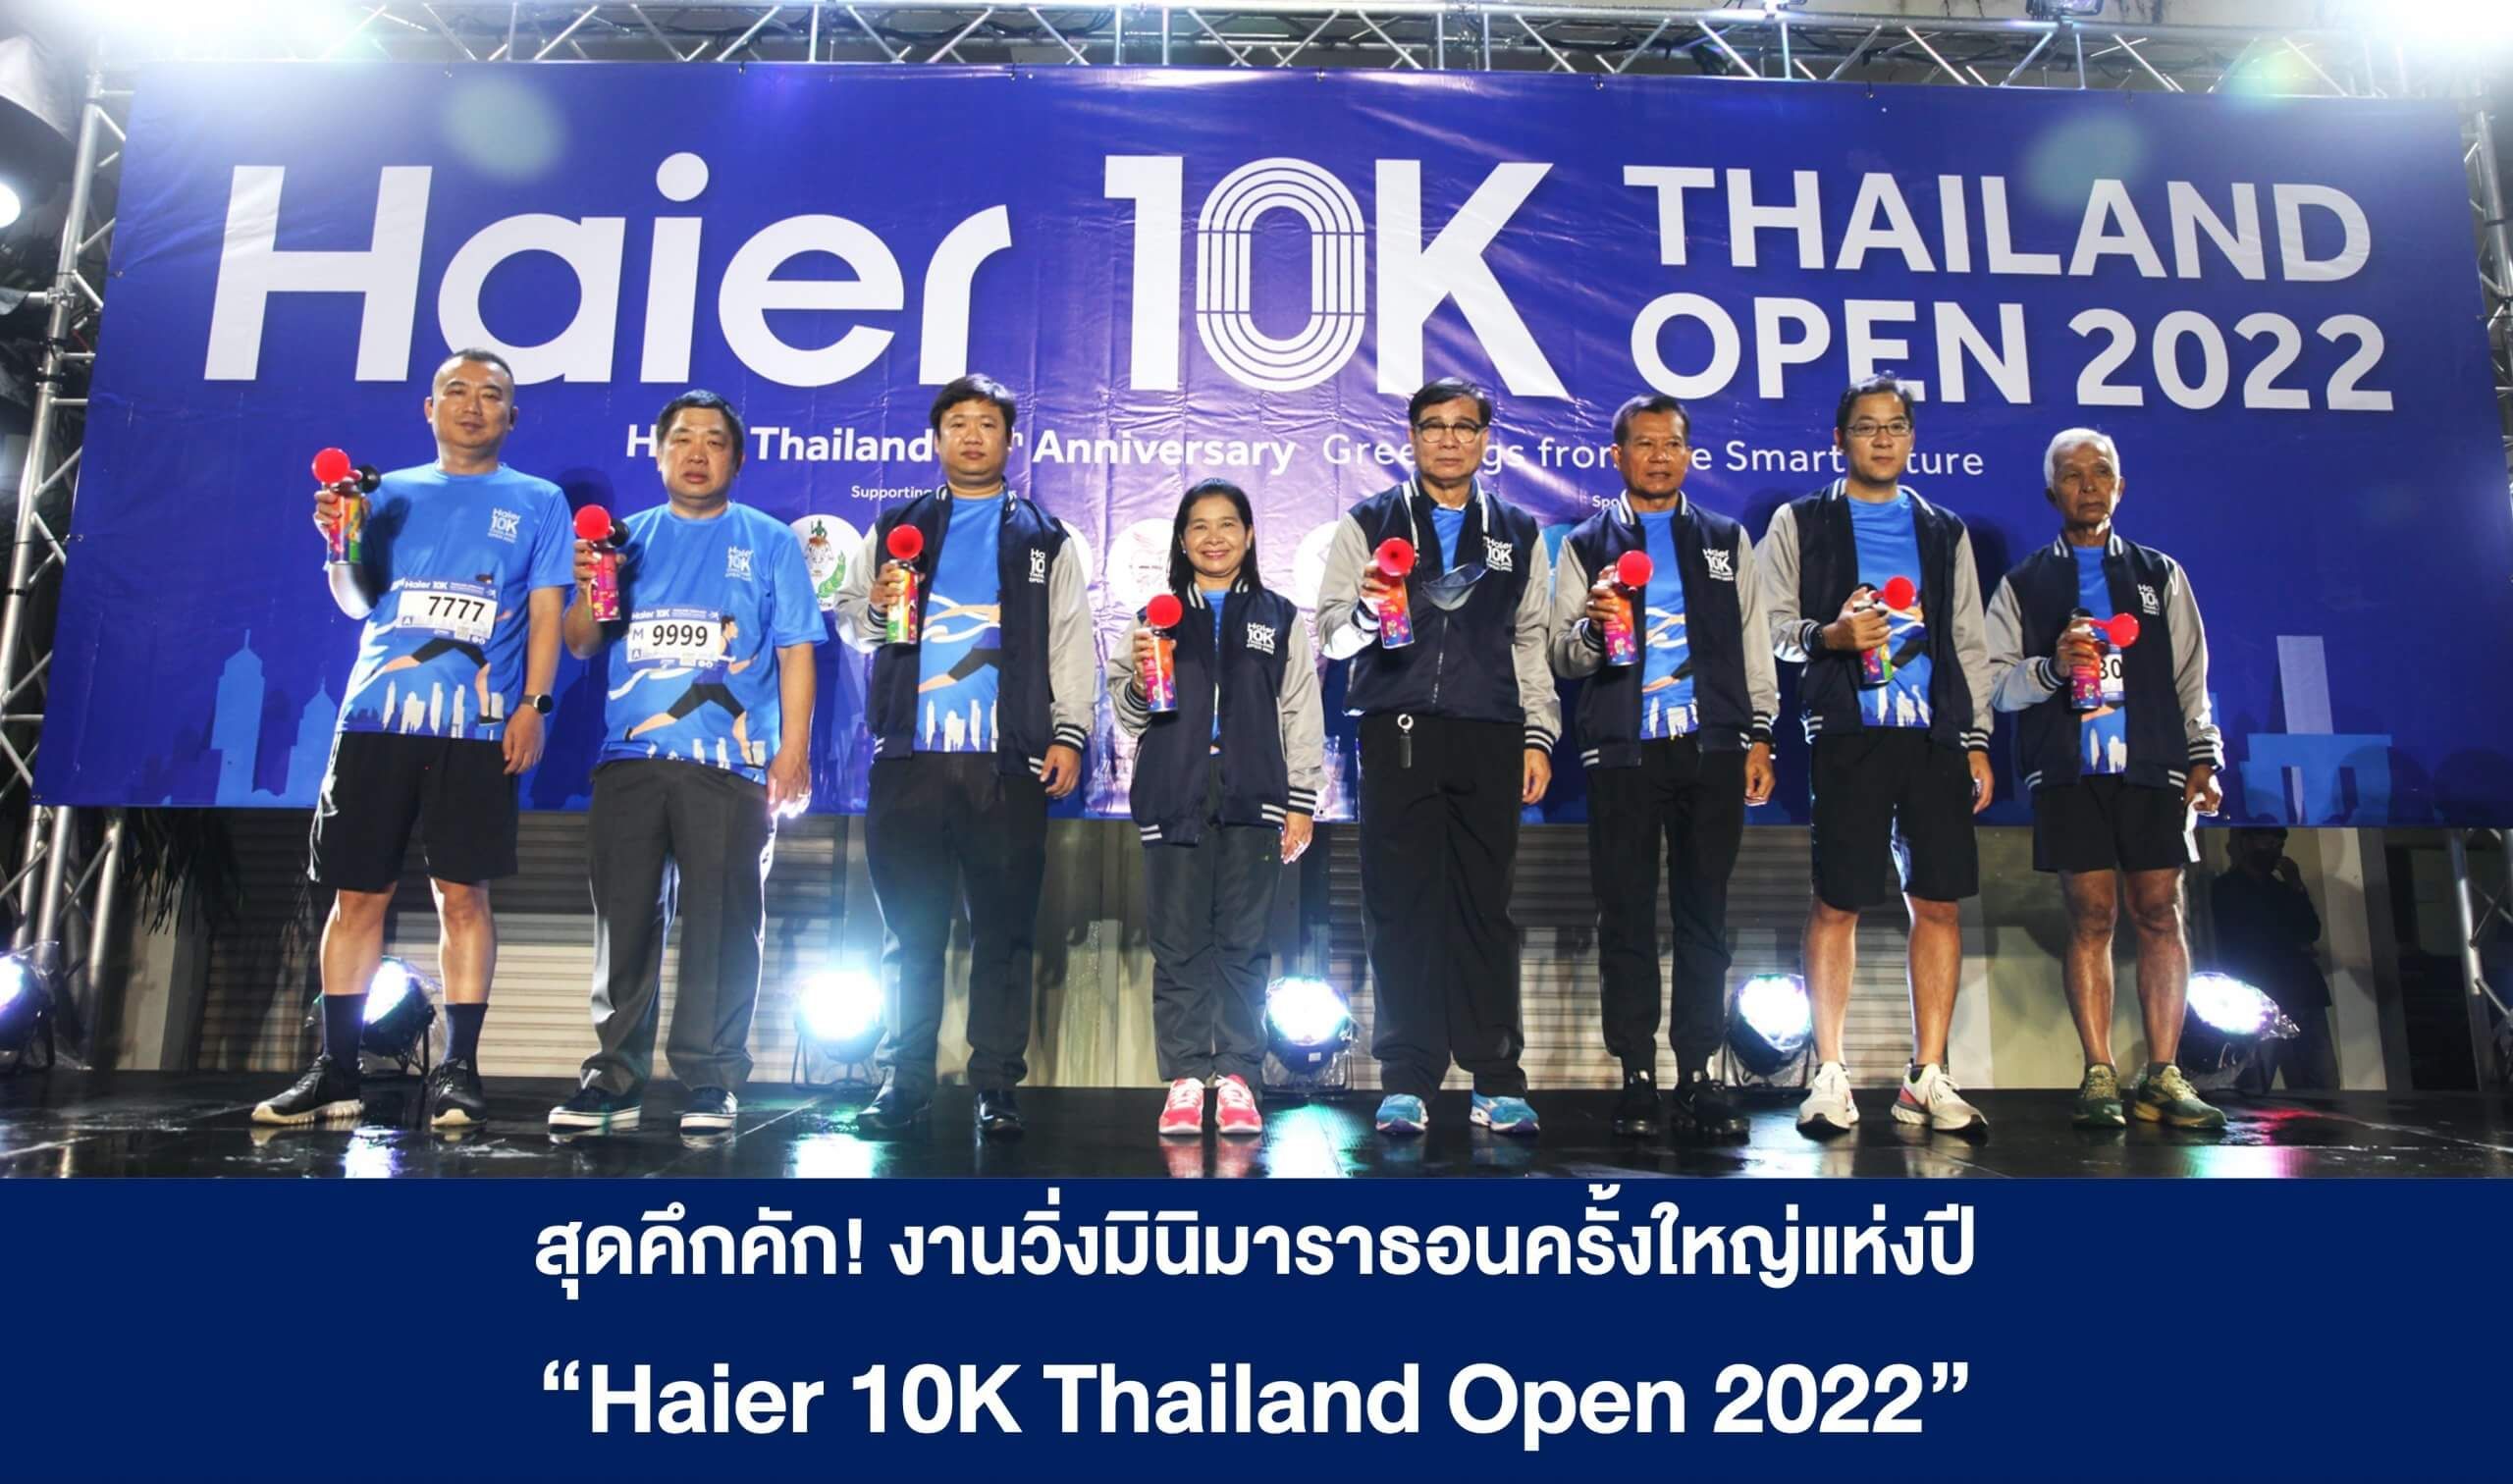 สุดคึกคัก! งานวิ่งมินิมาราธอนครั้งใหญ่แห่งปี “Haier 10K Thailand Open 2022”